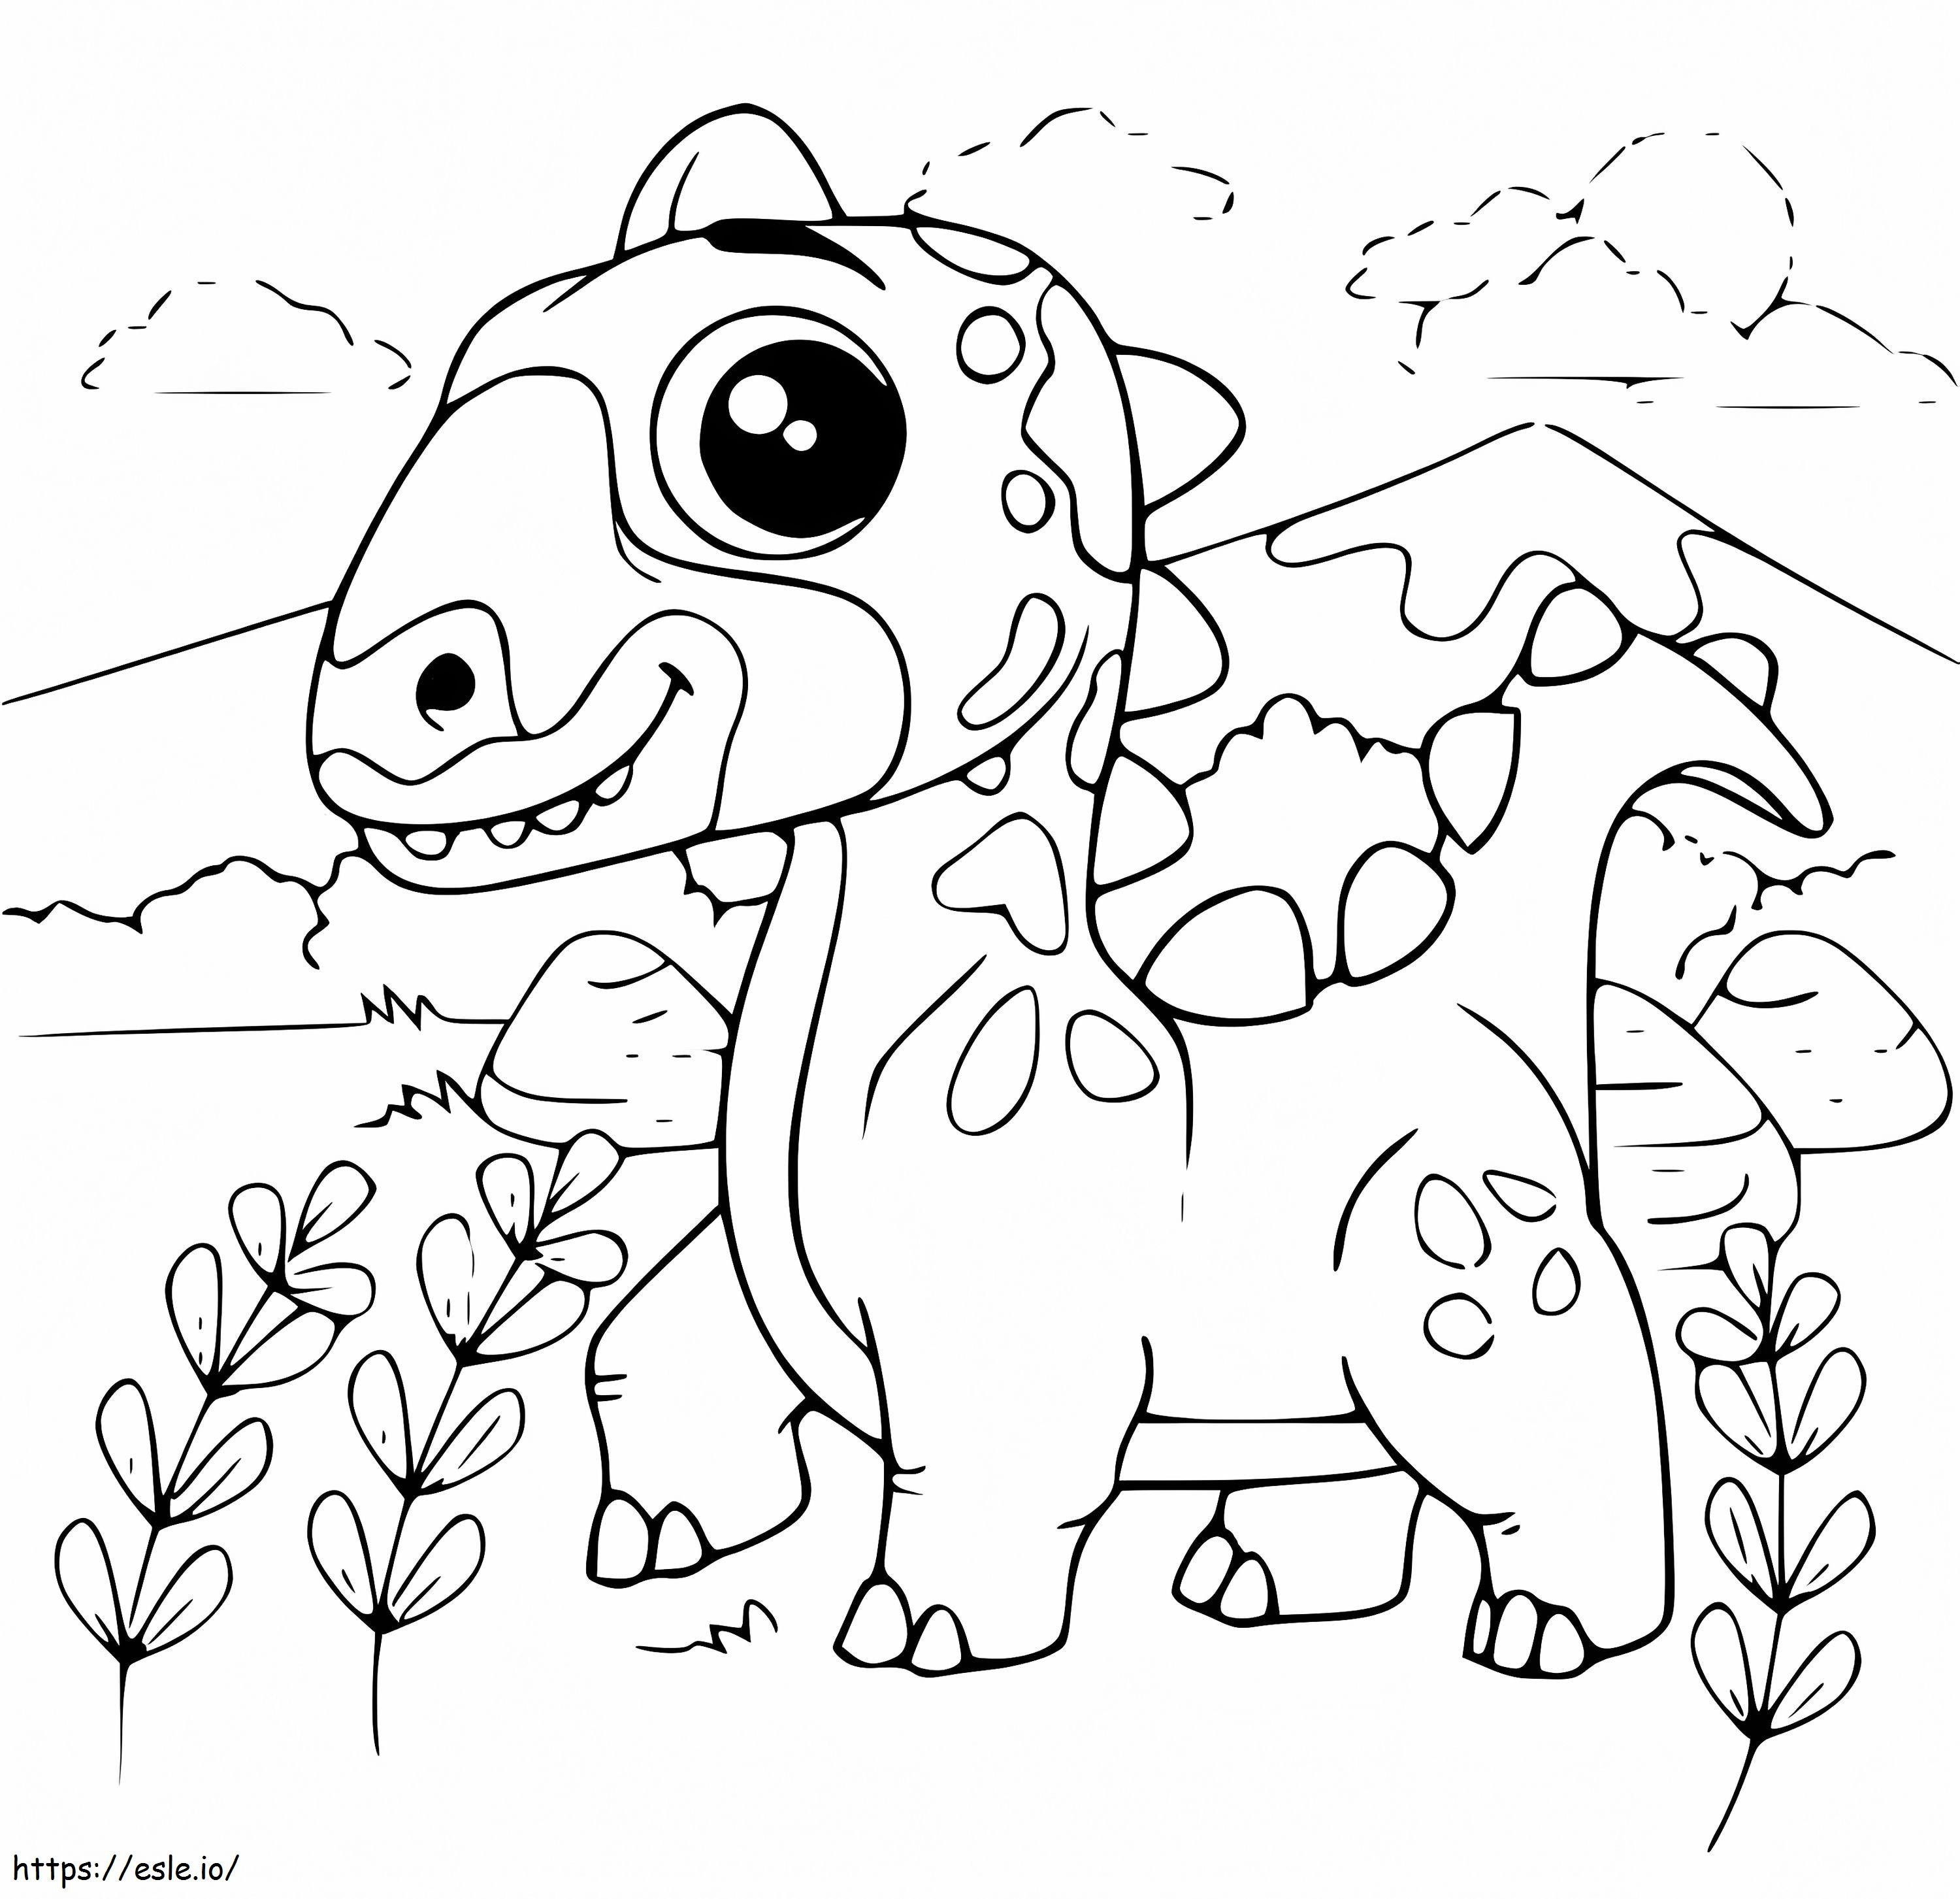 Dinossauro fofo para colorir